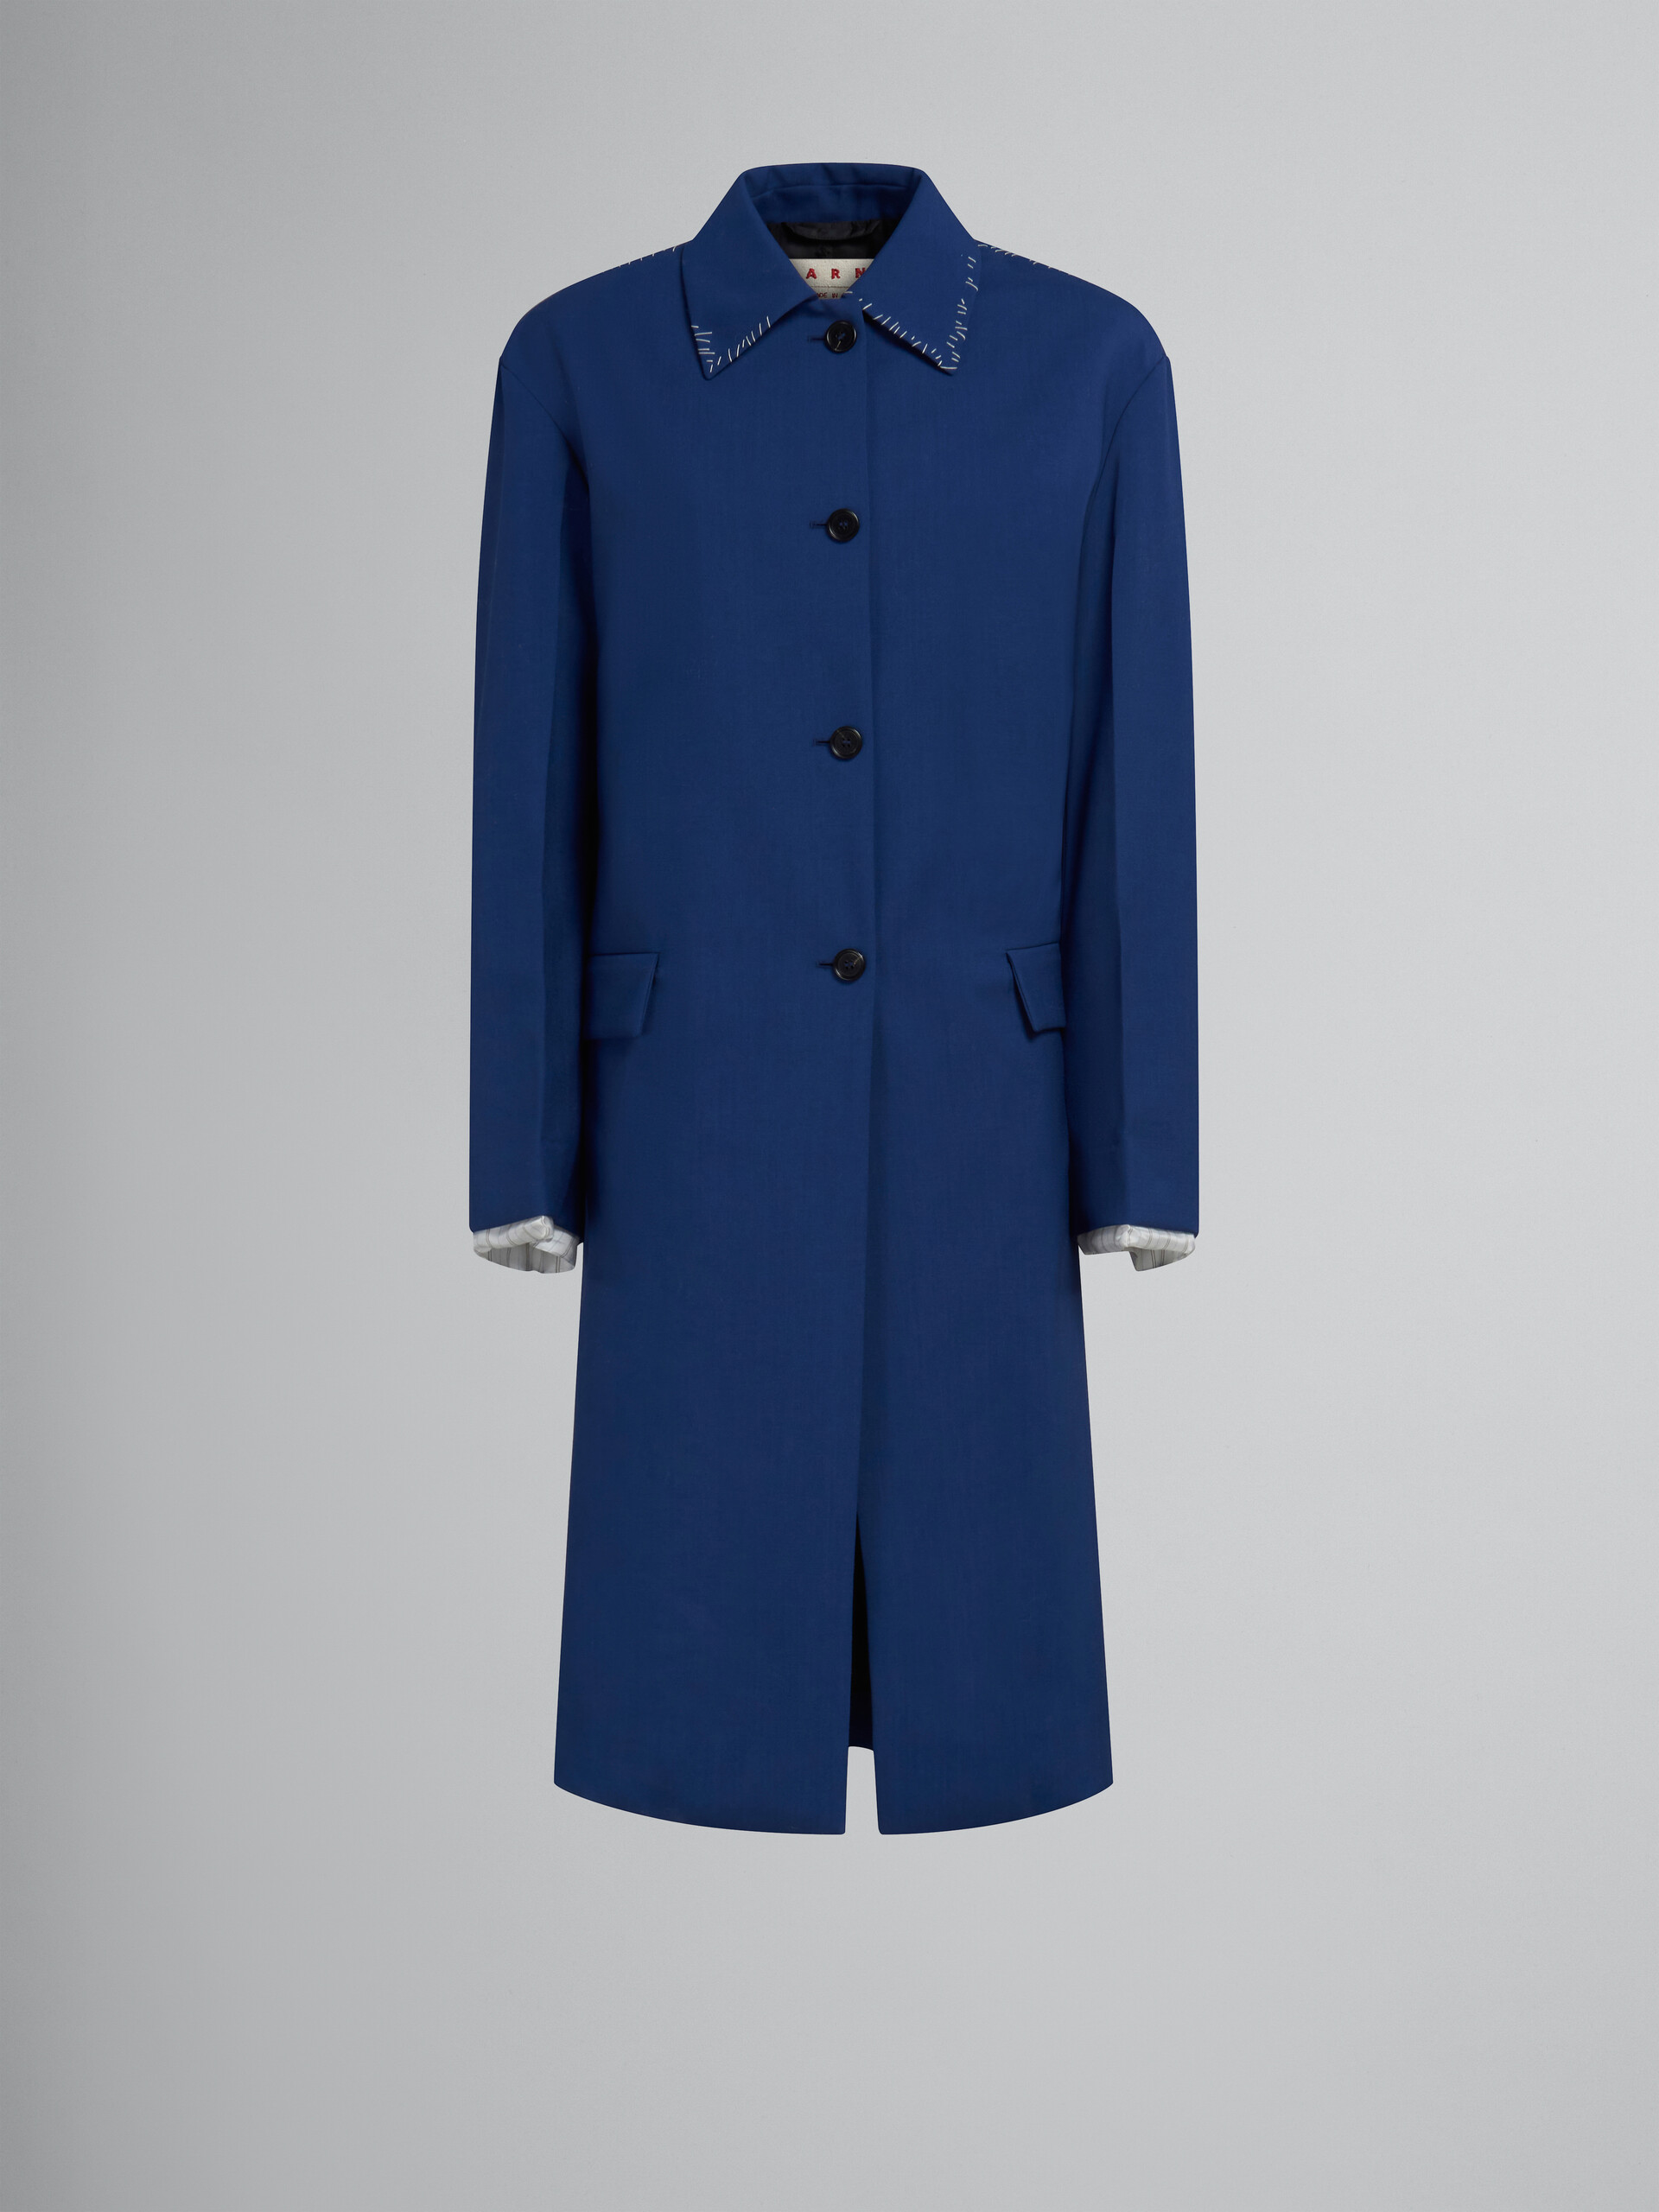 Trench-coat en laine tropicale bleue - Vestes - Image 1